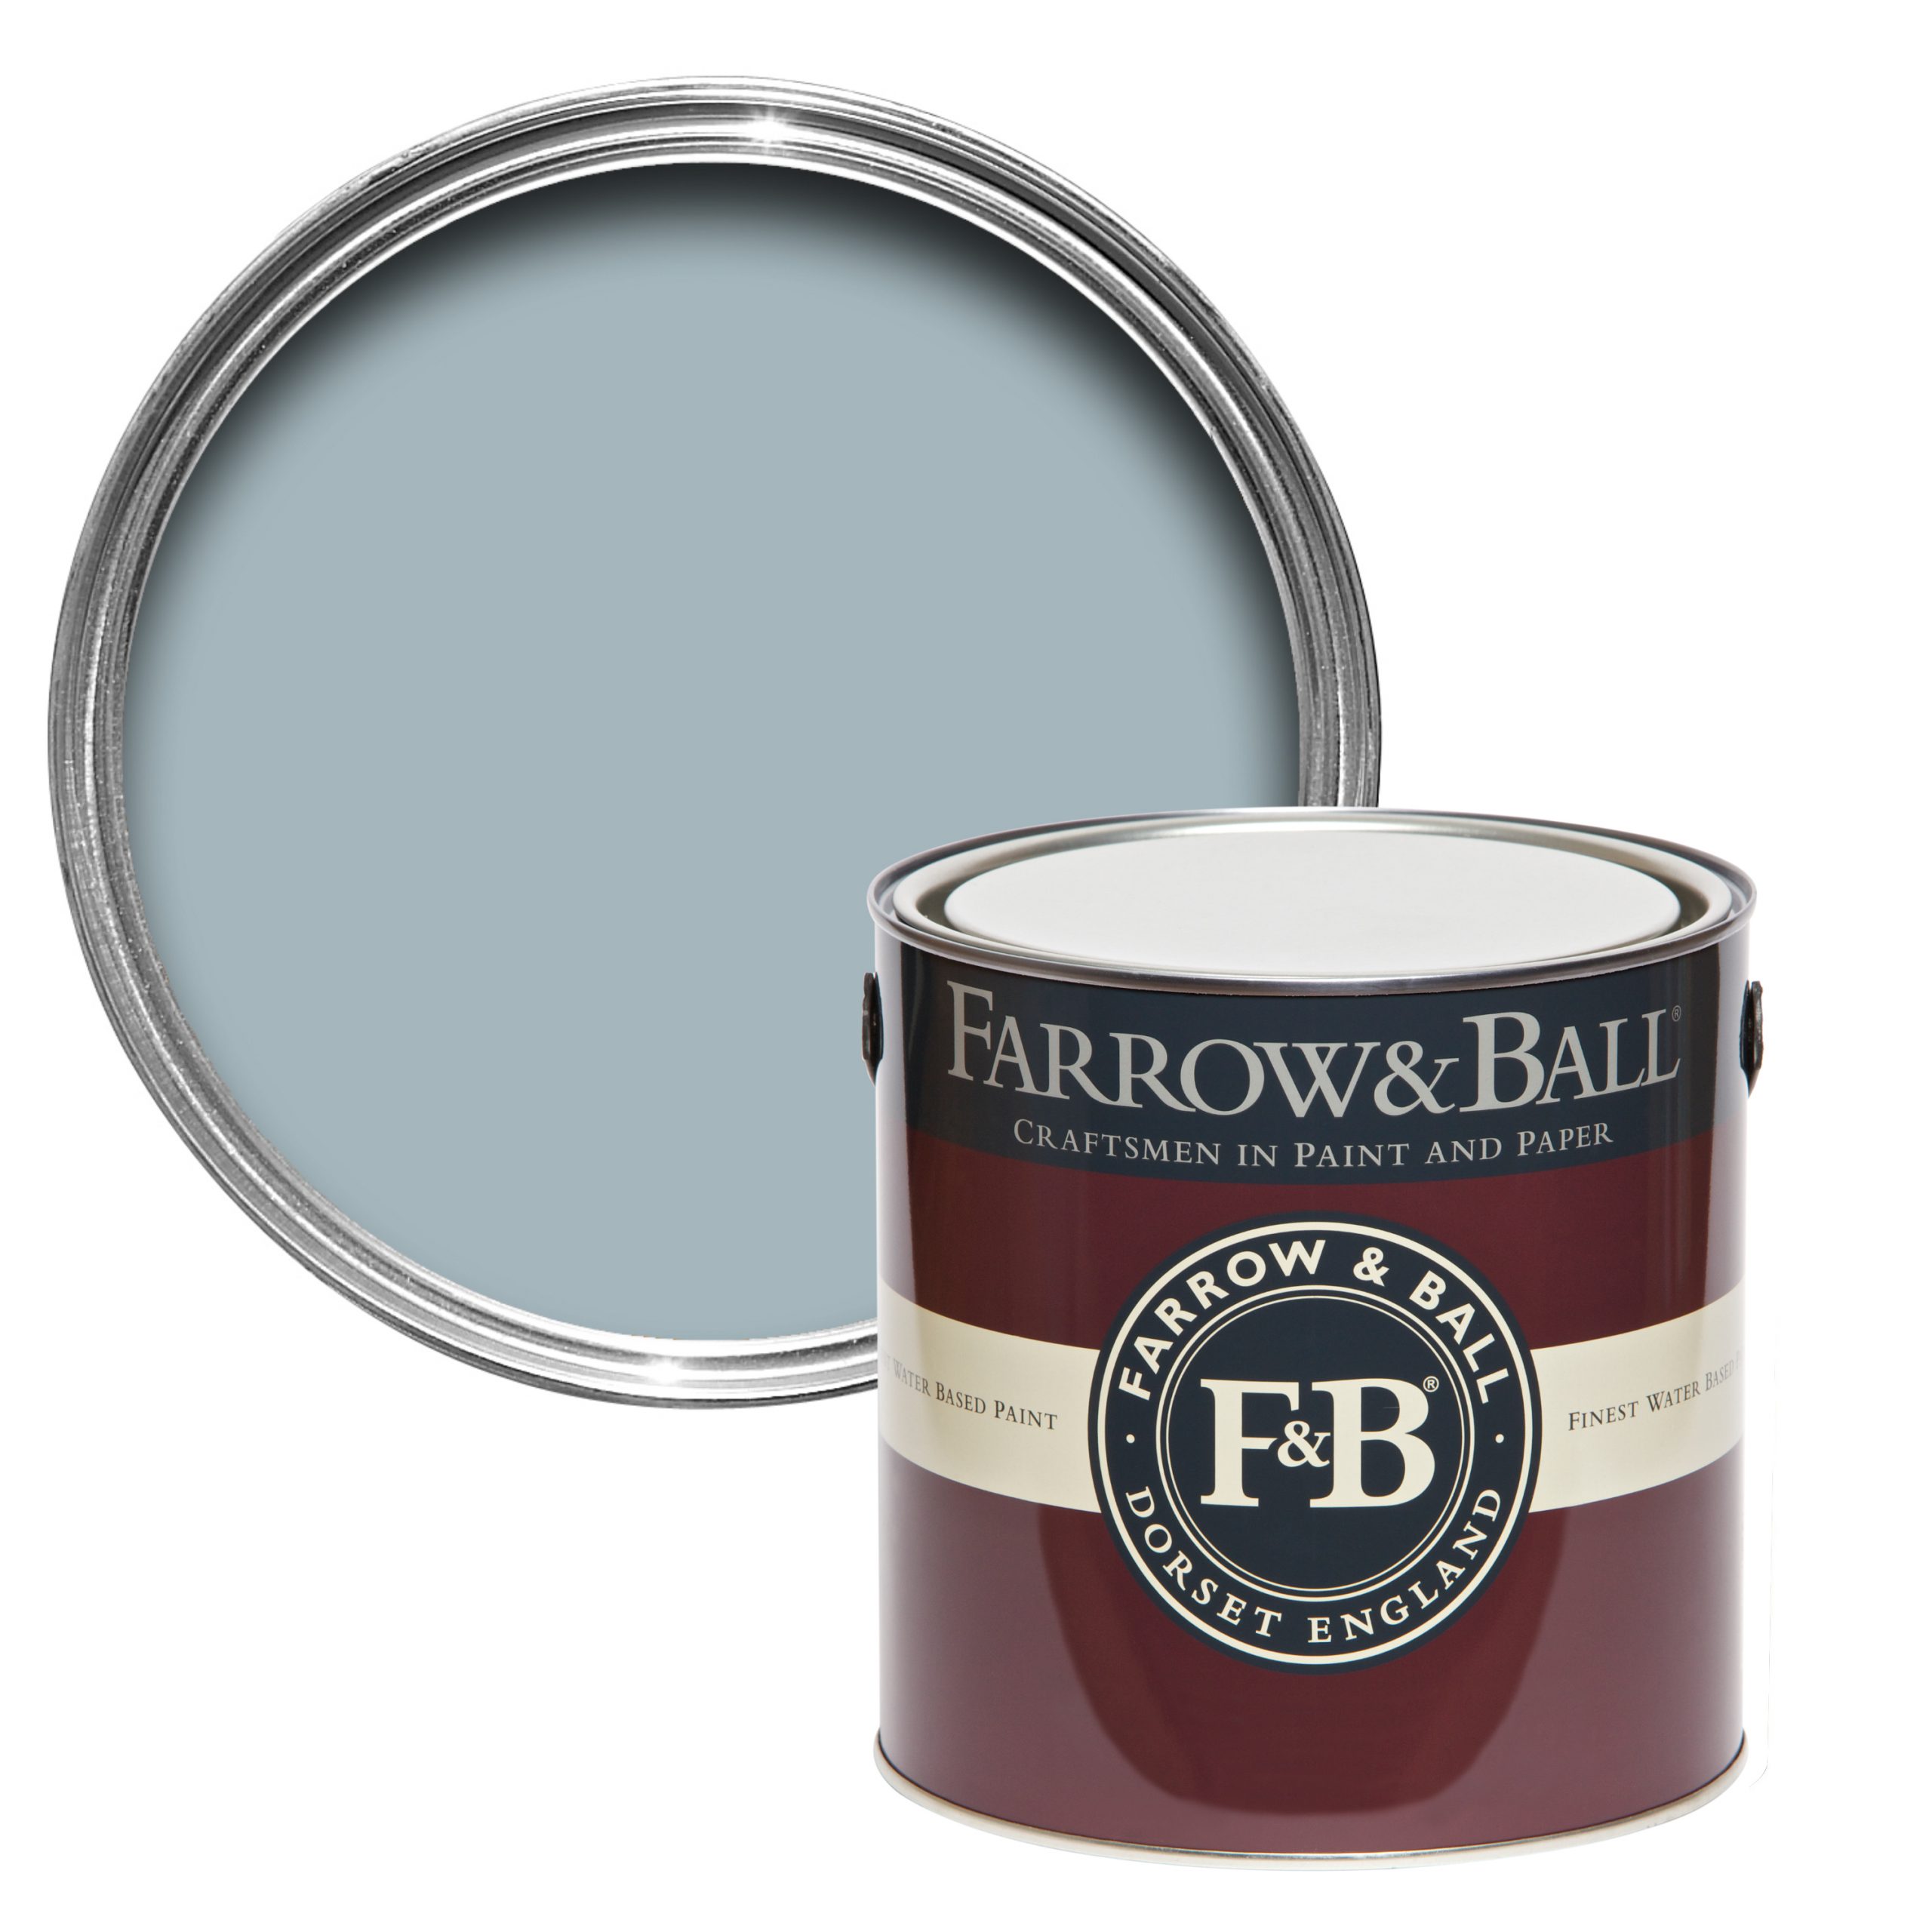 Vopsea albastră mată 7% luciu pentru interior Farrow & Ball Modern Emulsion Parma Gray No. 27 5 Litri